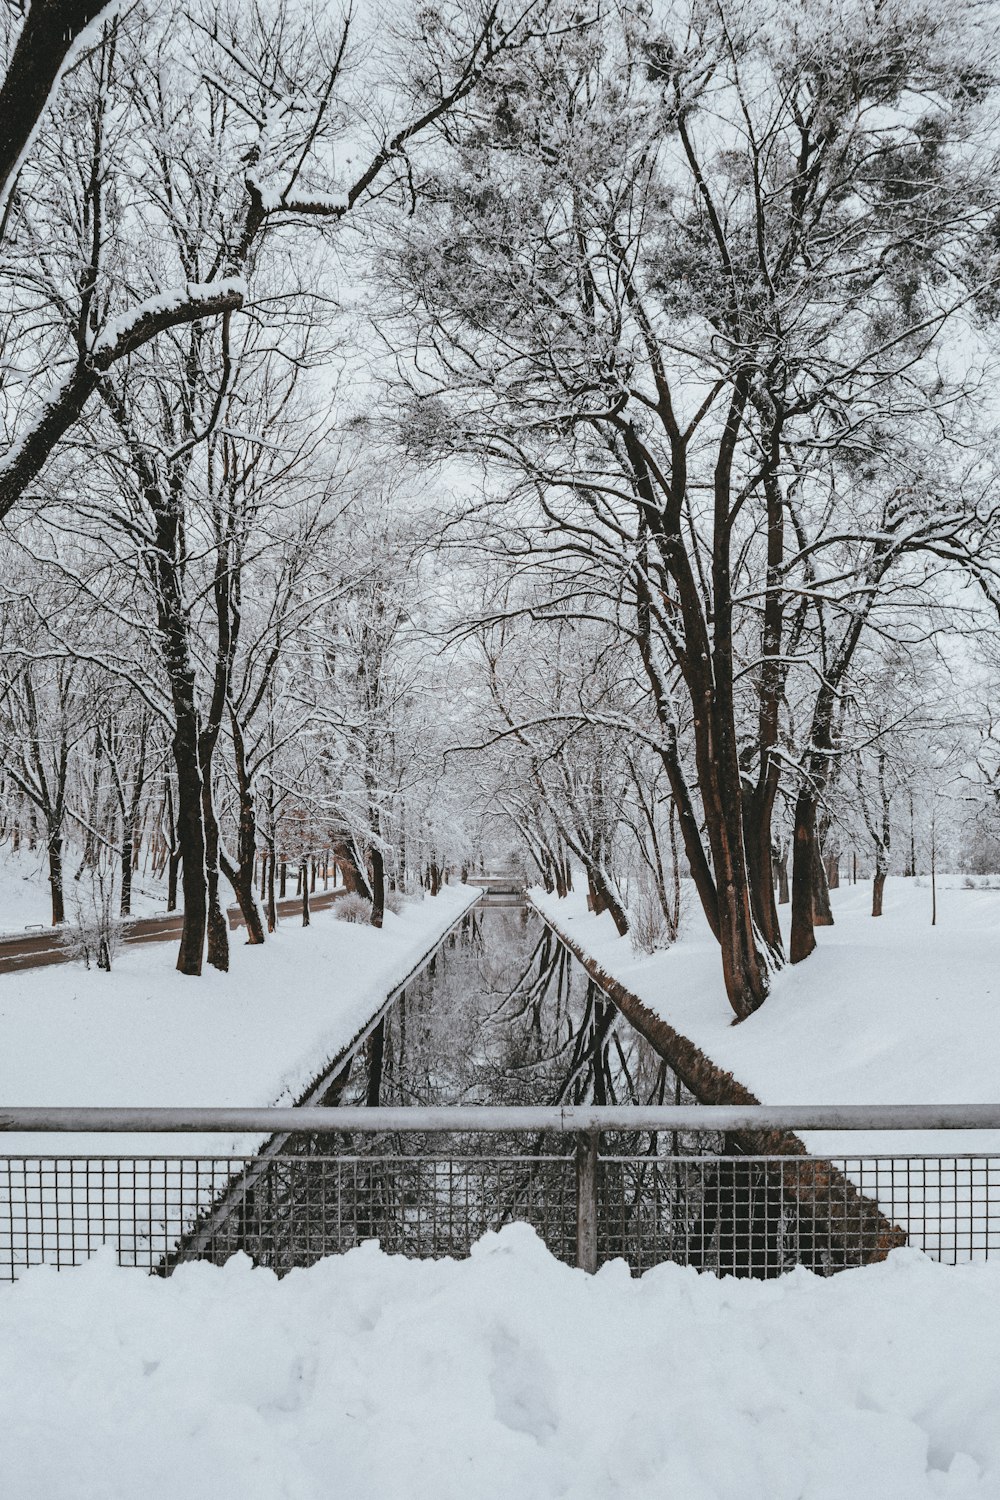 canal entre árboles cubiertos de nieve